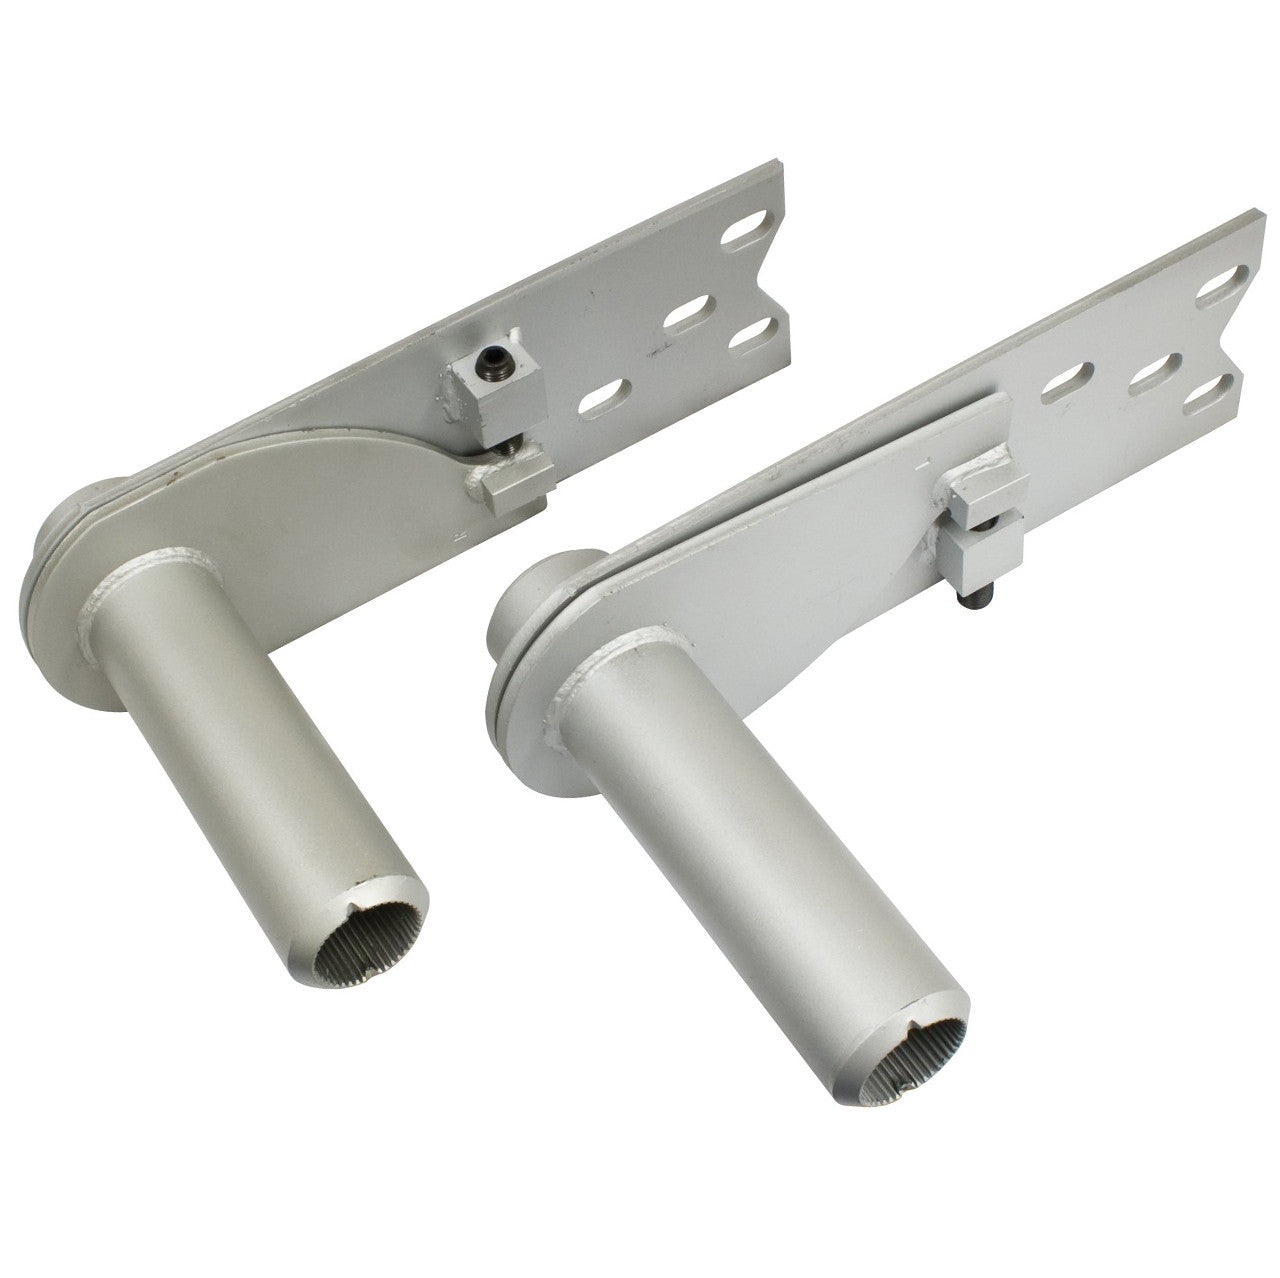 Empi 18-1075 Vw Rear Adjustable Irs Spring Plates For 26-9/16" Torsion Bar